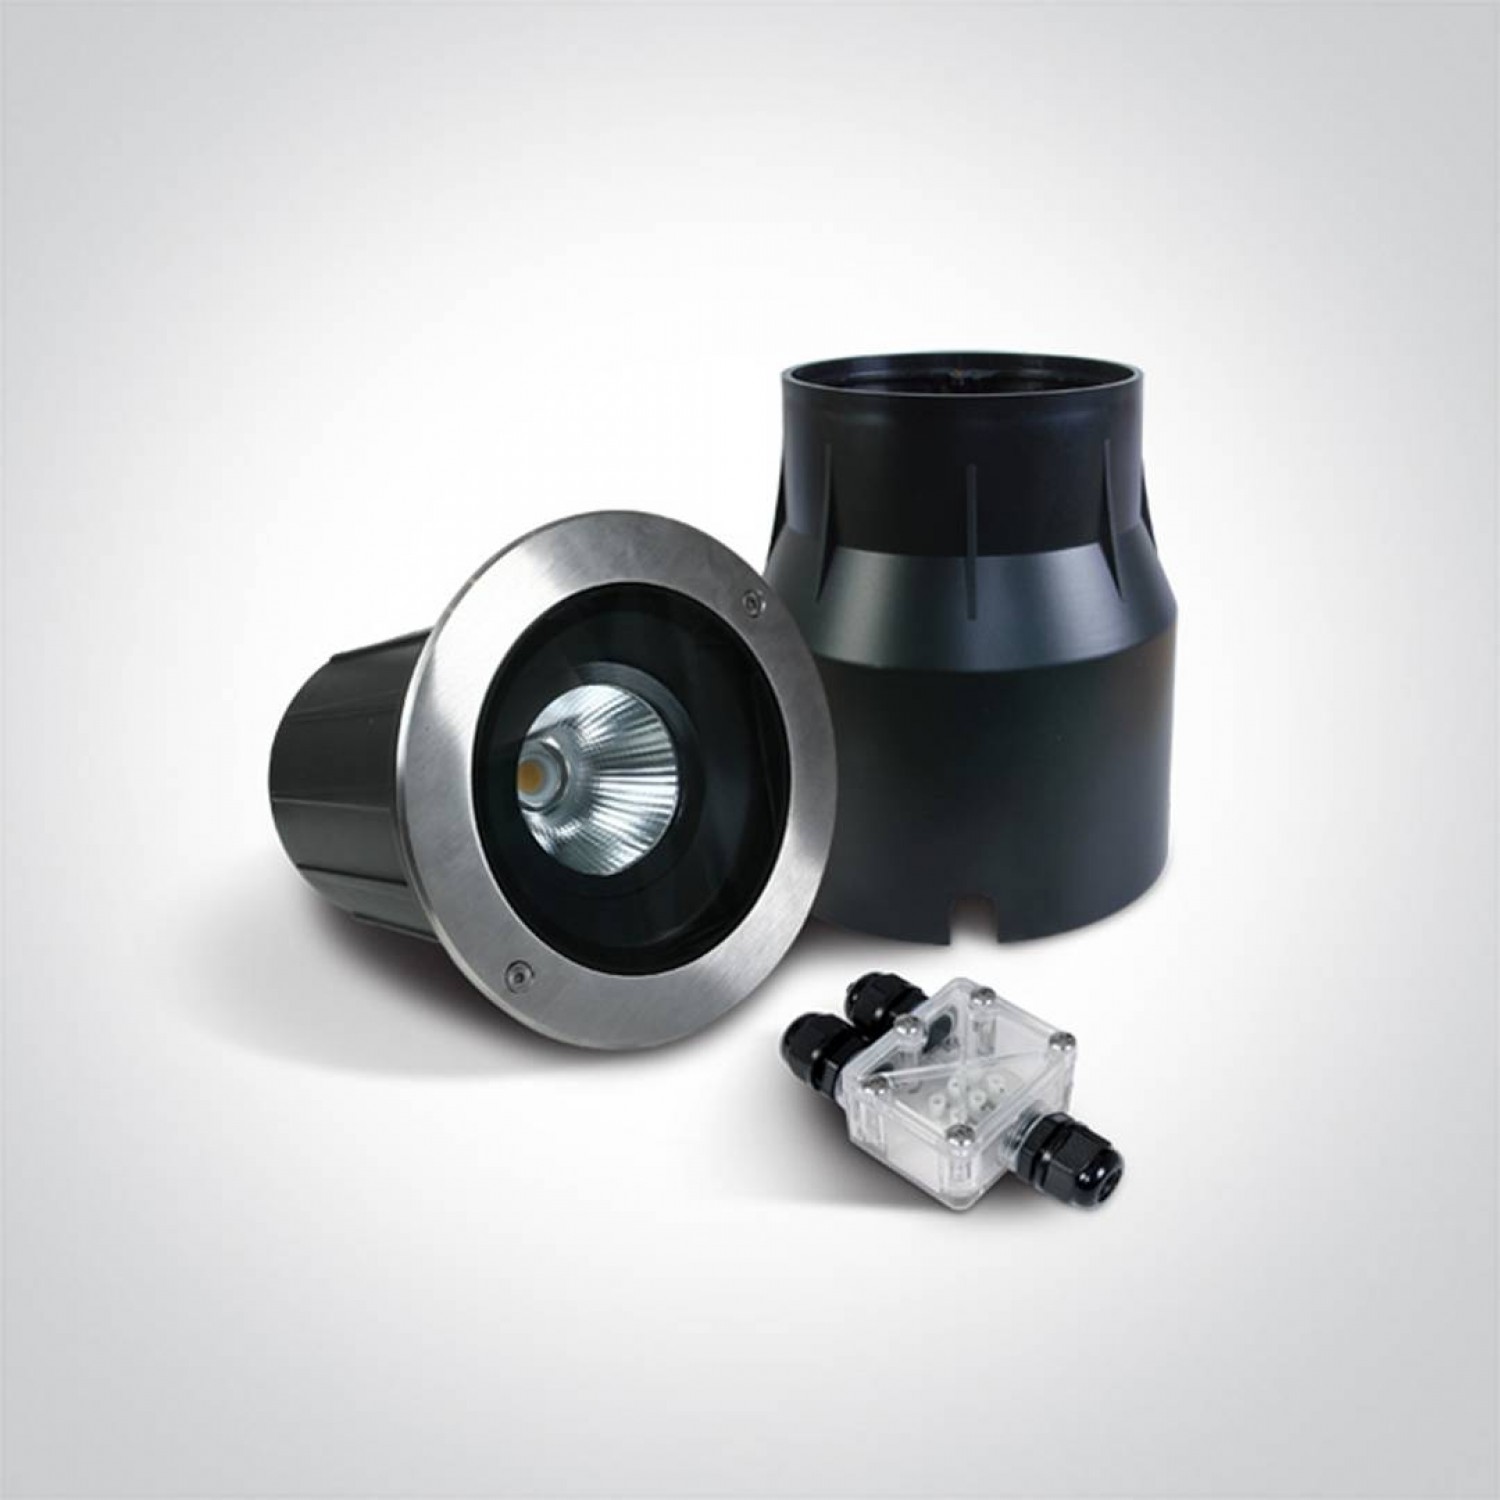 Ґрунтовий світильник ONE Light The COB Inground Adjustable Range 69054/W